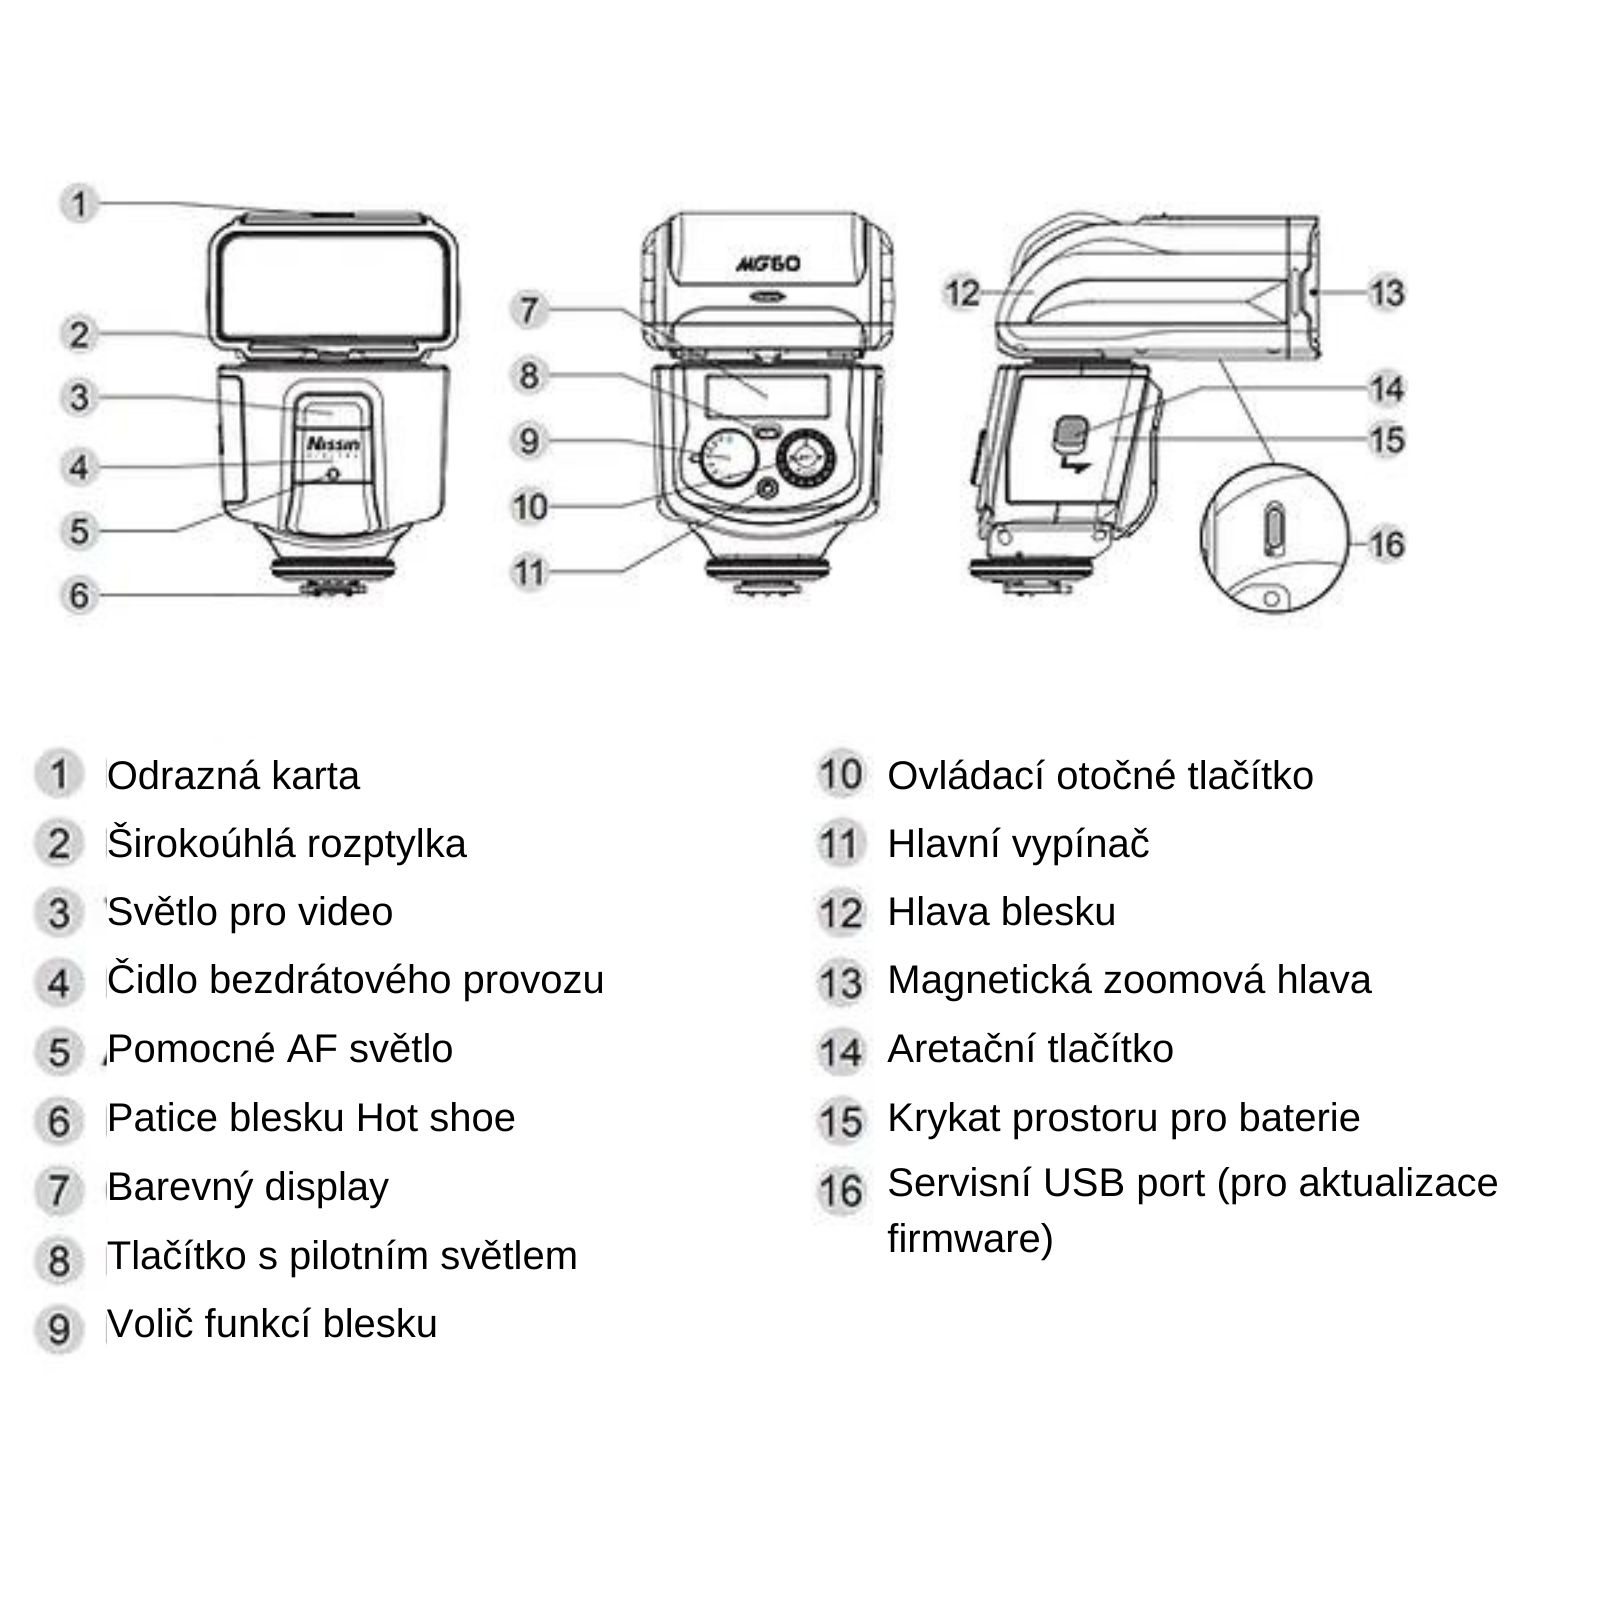 Popis funkcí a ovládání blesku Nissin MG60